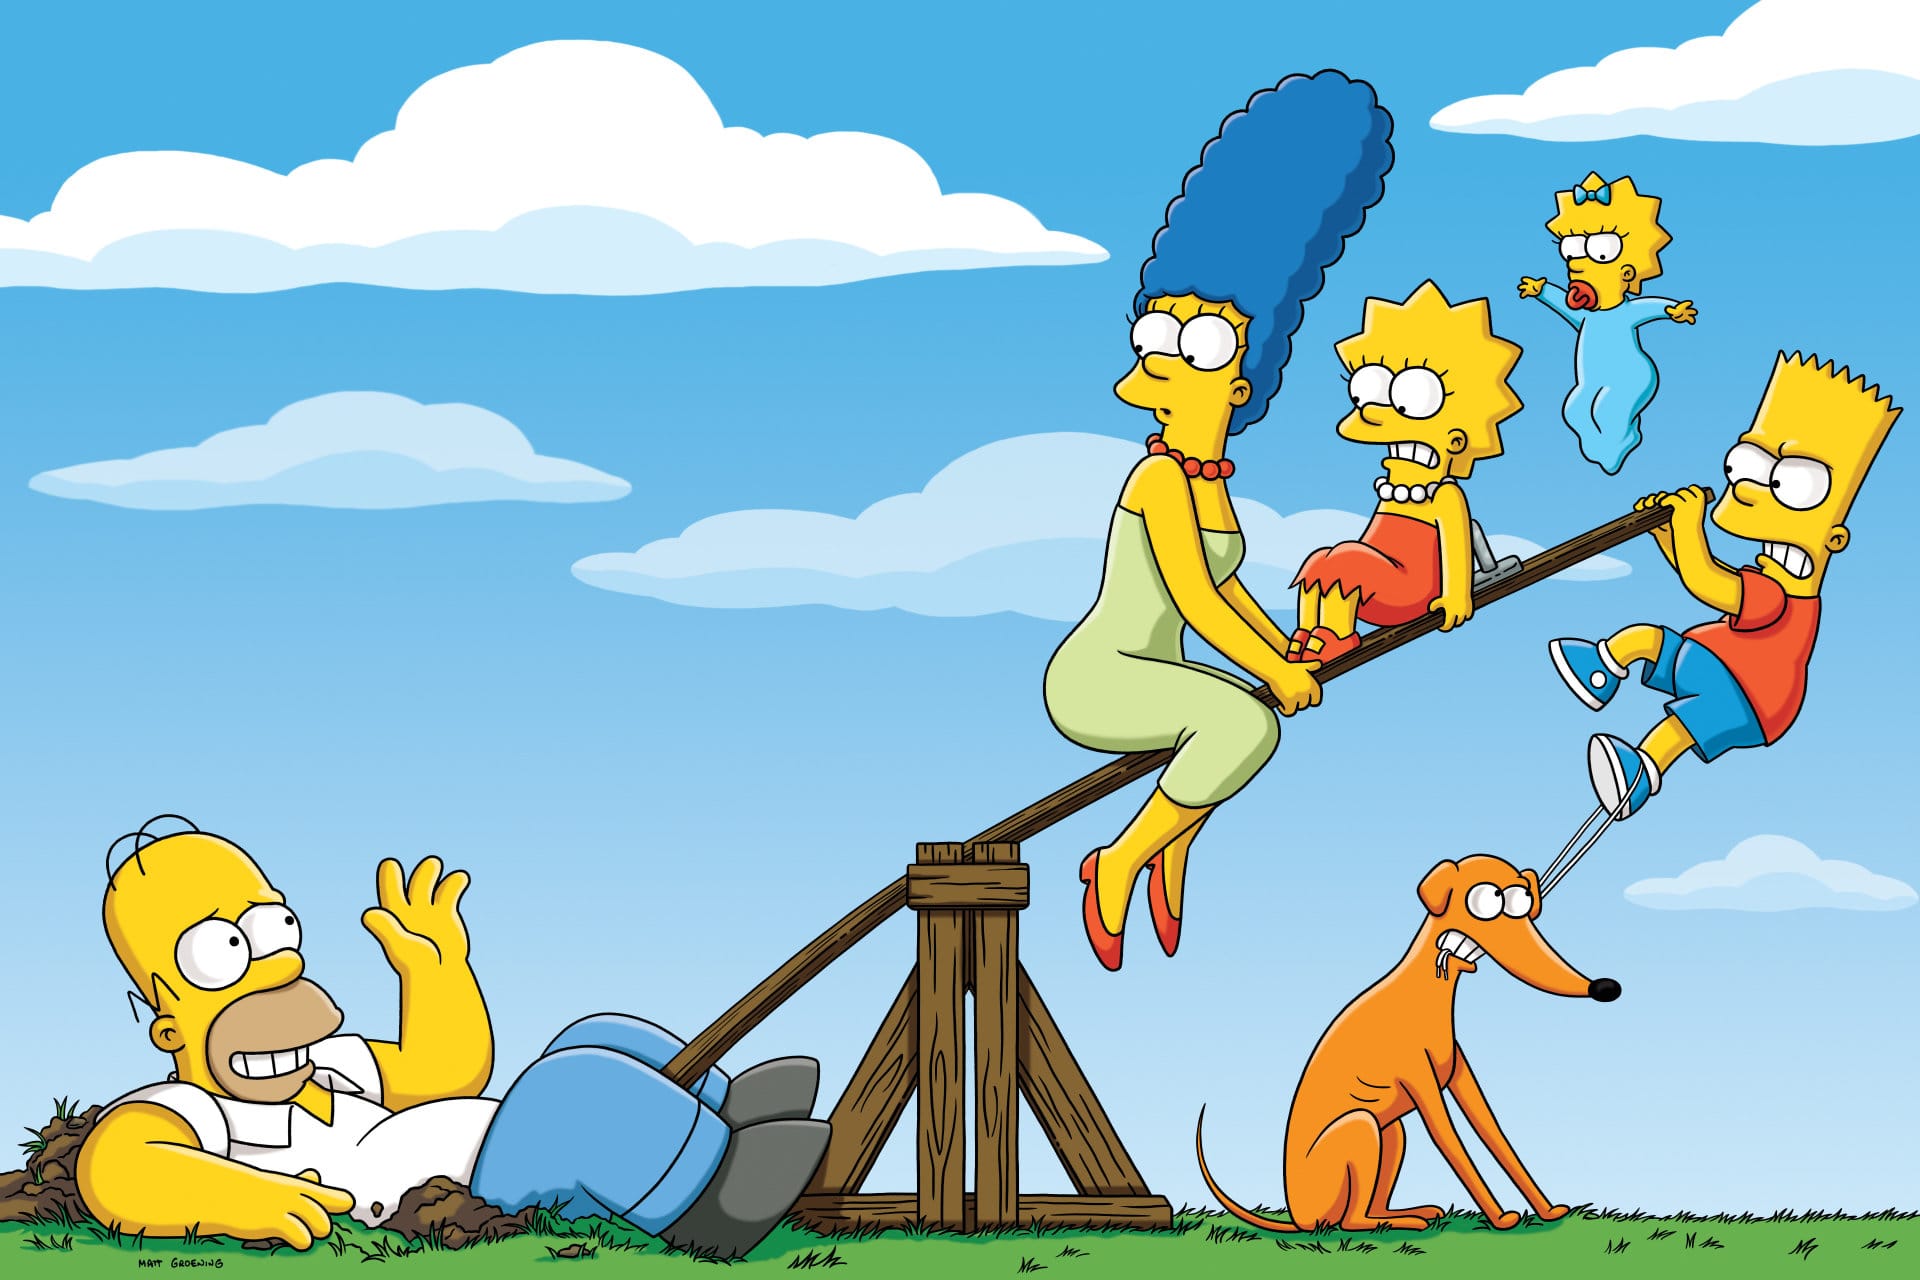 Les Simpson Saison 24